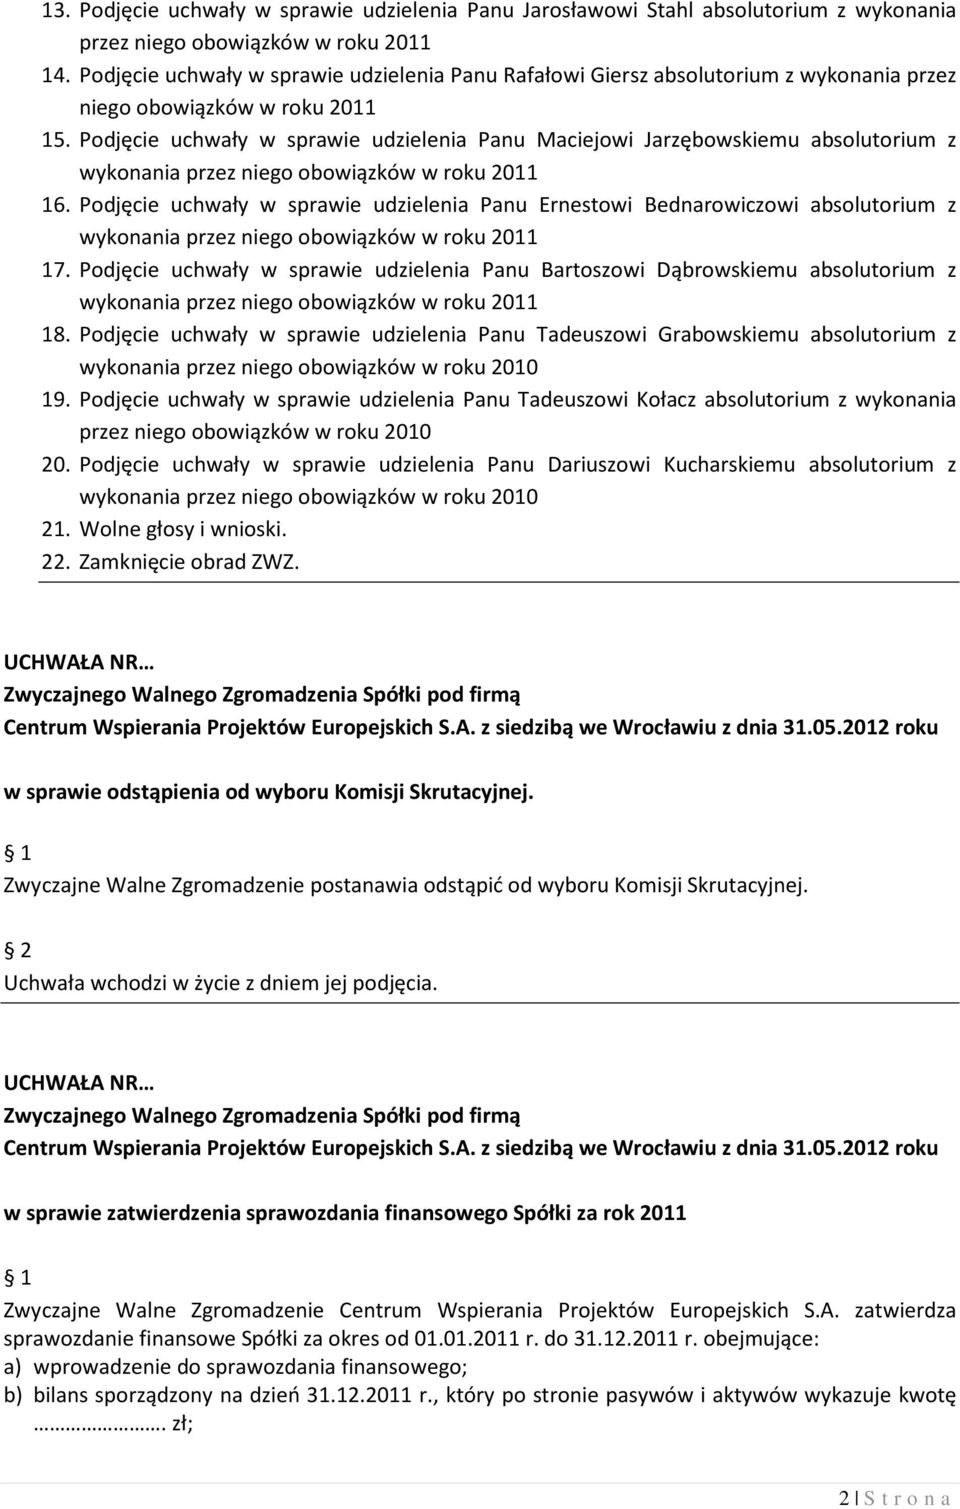 Podjęcie uchwały w sprawie udzielenia Panu Maciejowi Jarzębowskiemu absolutorium z wykonania przez niego obowiązków w roku 2011 16.